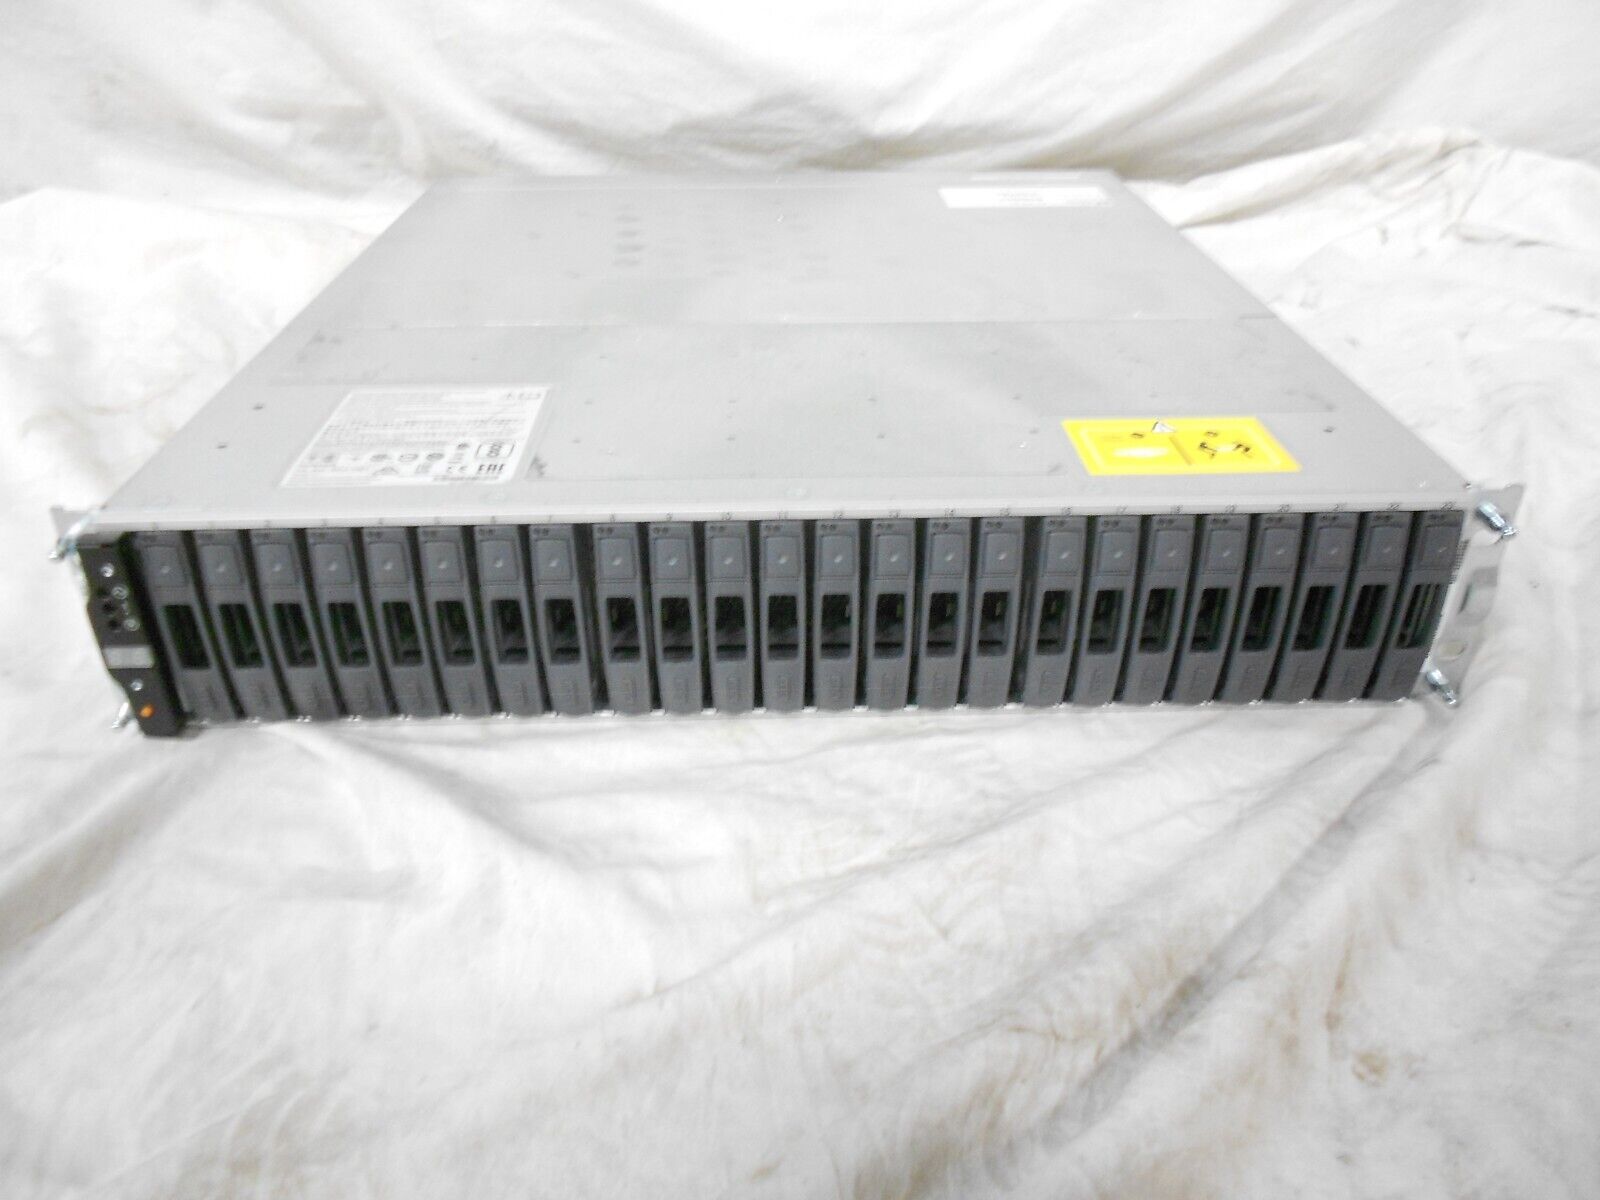 Netapp FAS2650 Storage Array 24x 2.5